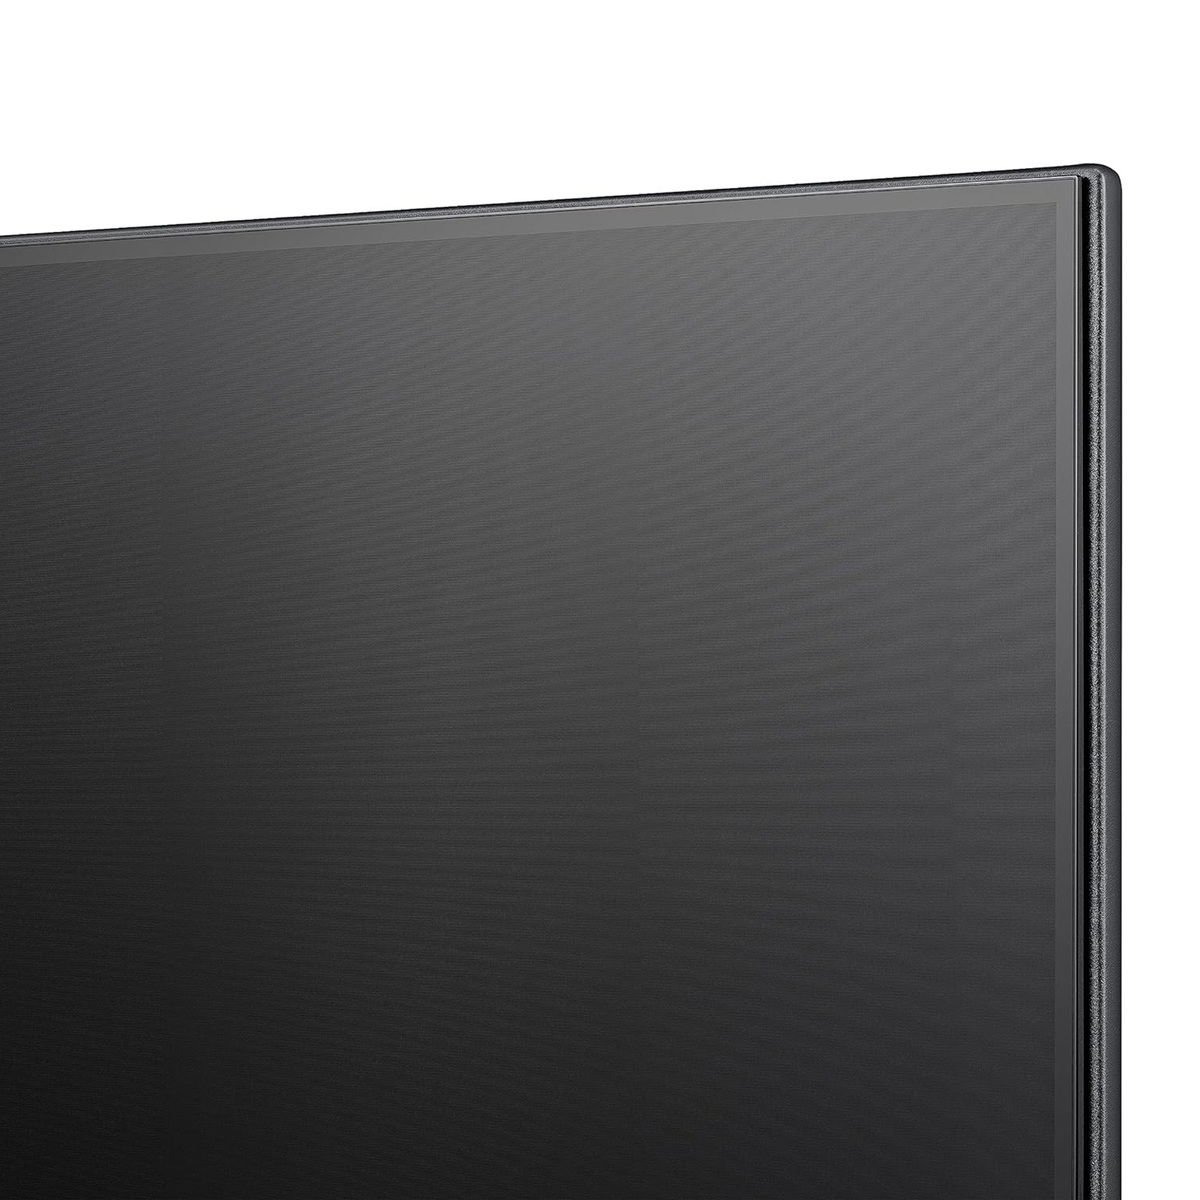 Hisense 75 inches  4K UHD LED Smart TV, Black, 75E6K